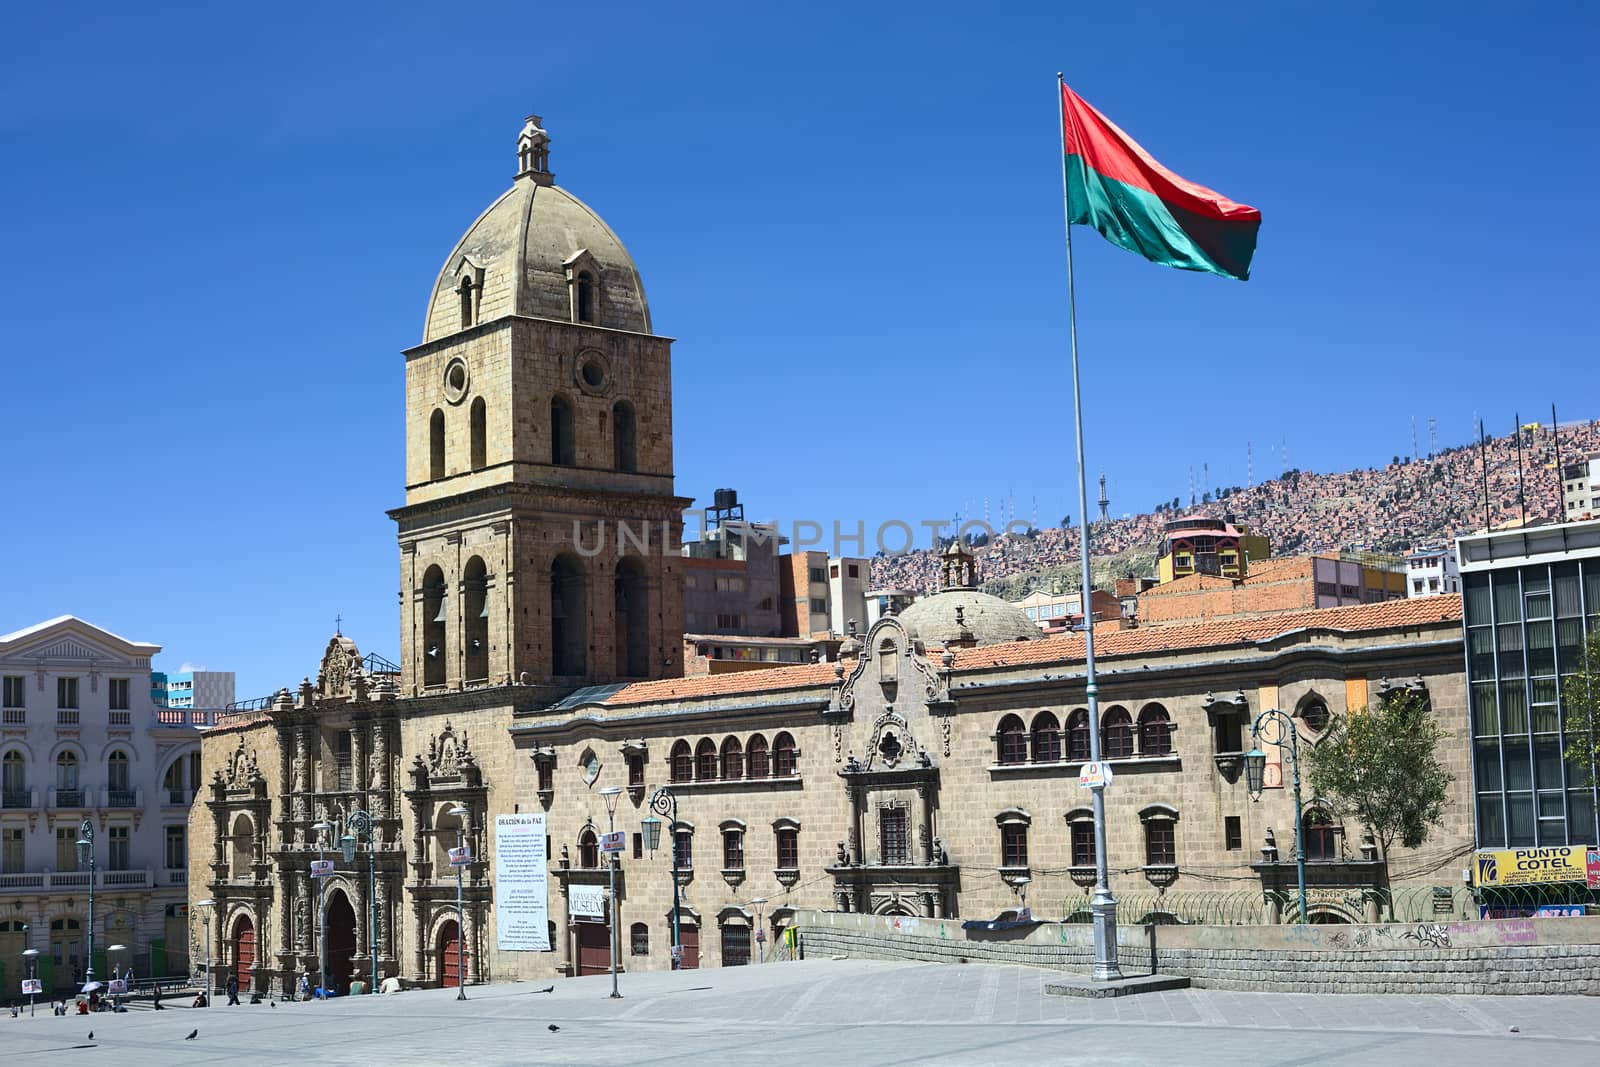 Basilica of San Francisco in La Paz, Bolivia by ildi